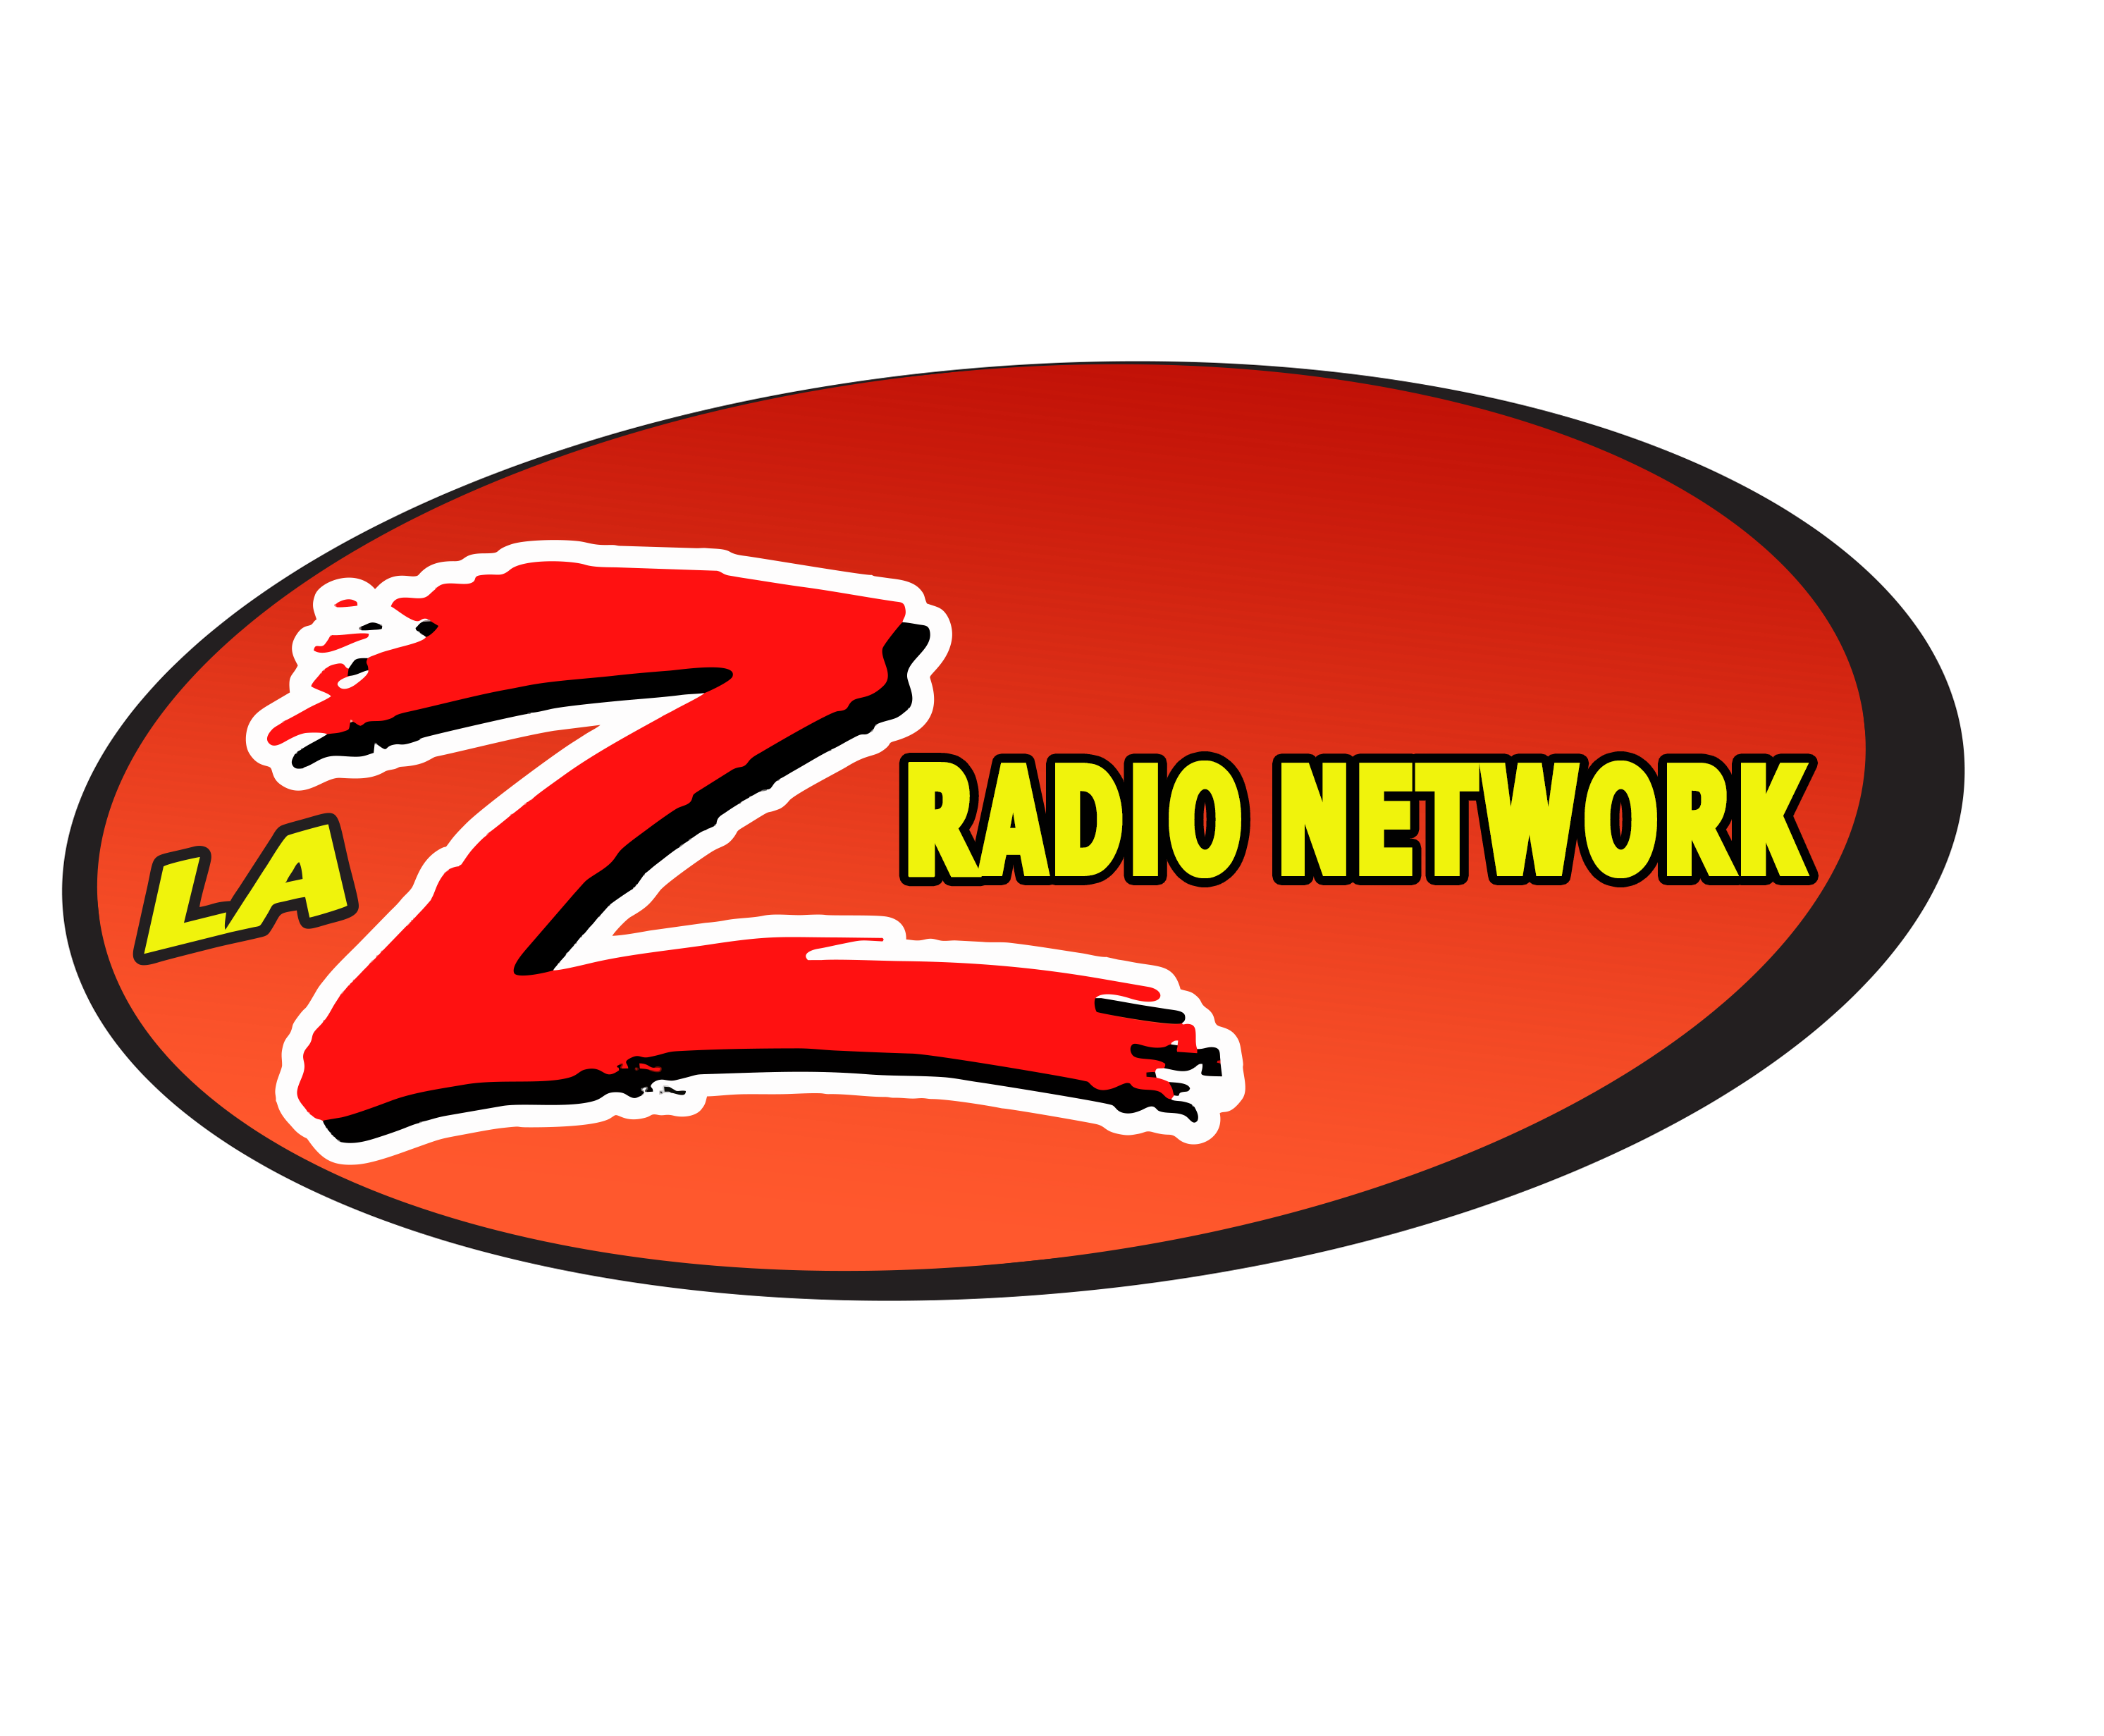 8La Z Radio